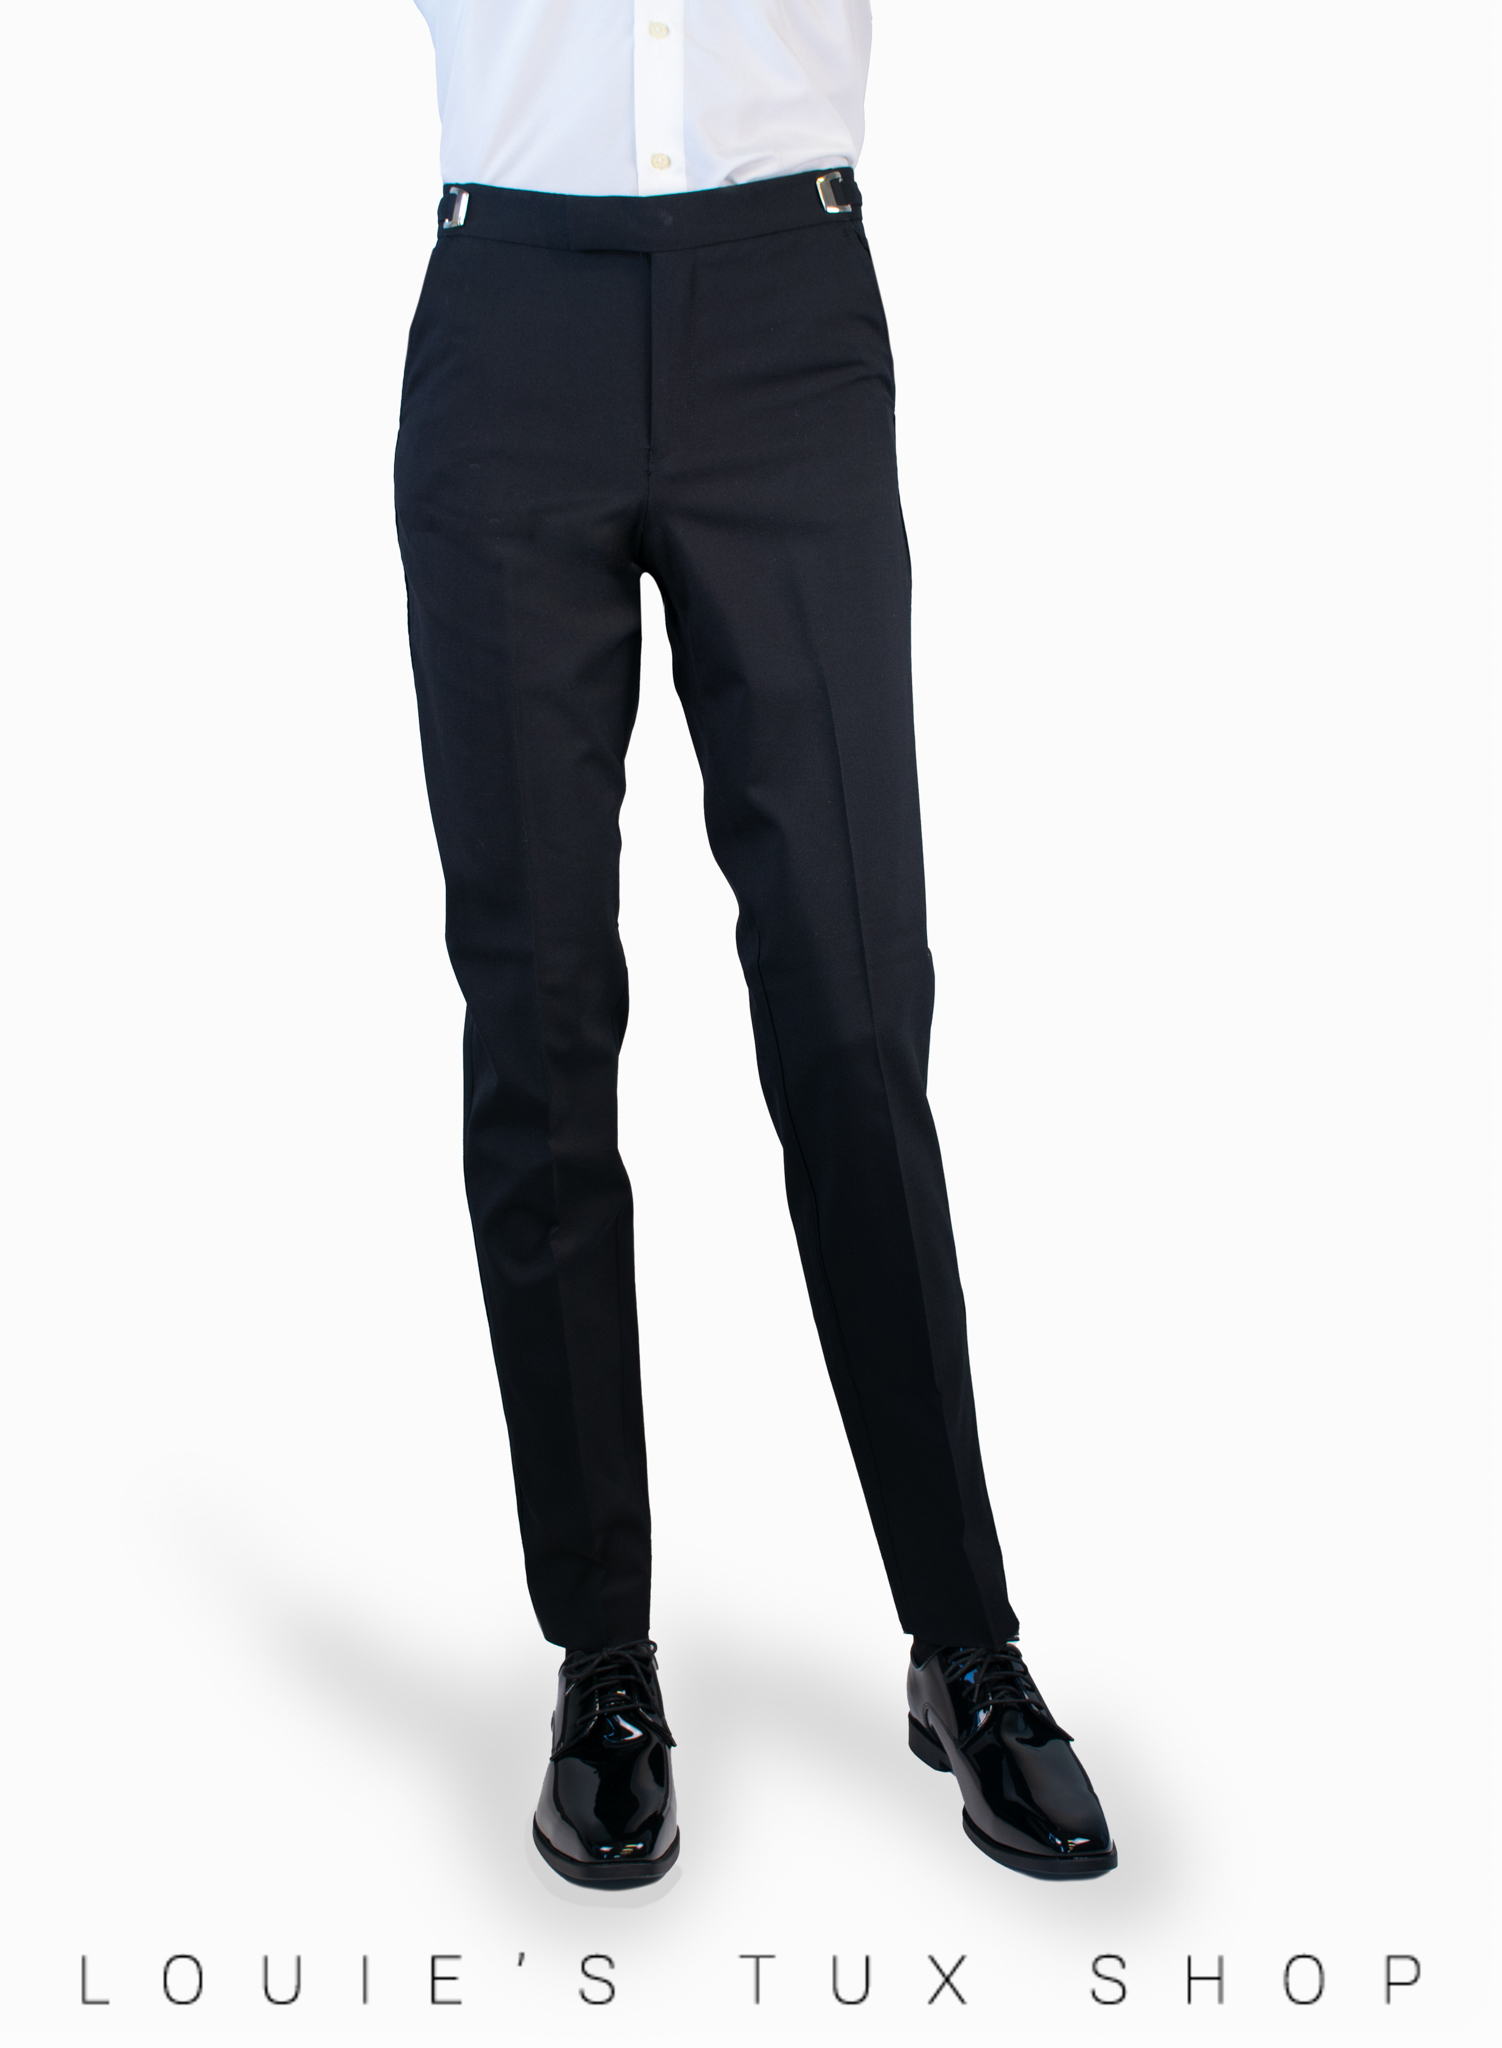 Men's Black Dress Pants | Suits for Weddings & Events